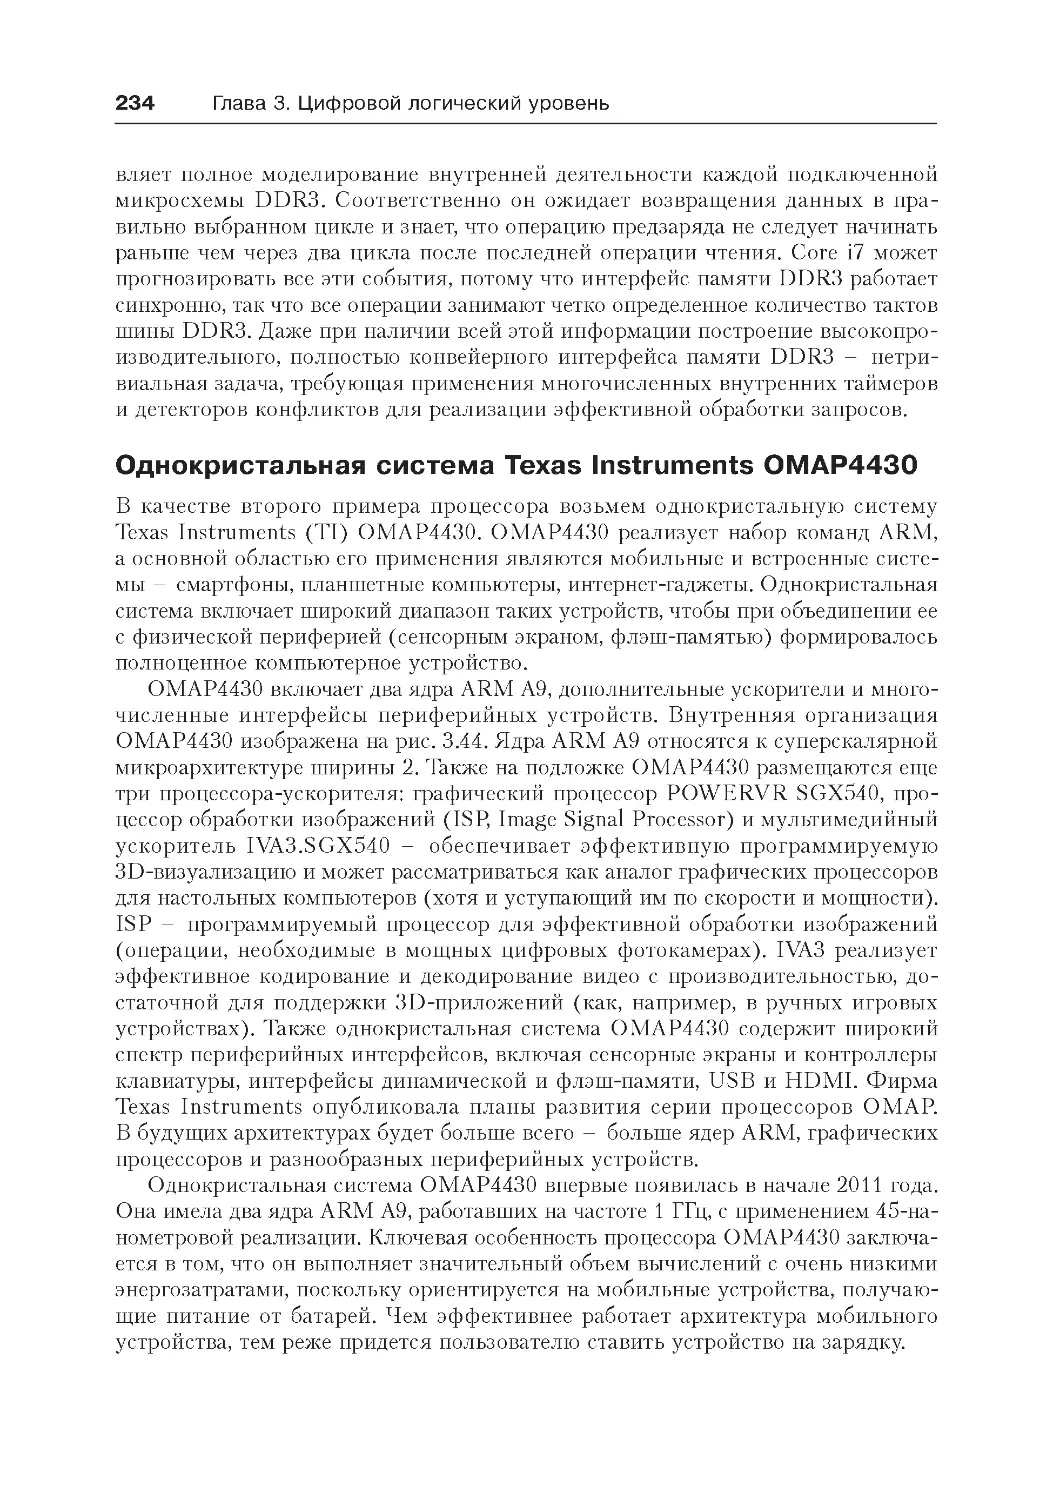 ﻿Однокристальная система Texas Instruments OMAP443